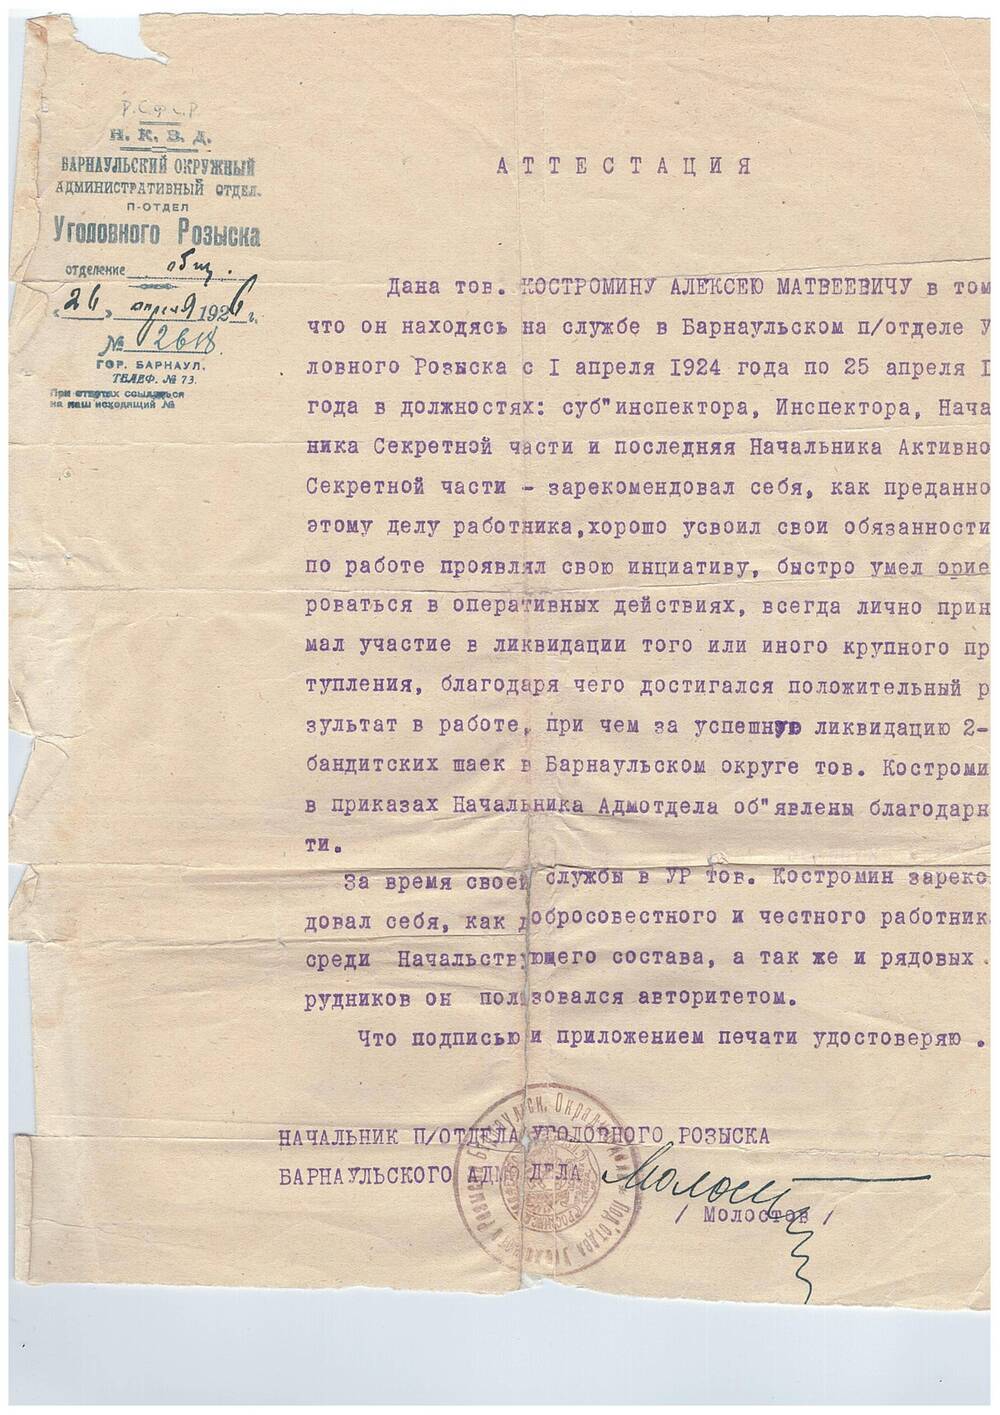 Аттестация на Костромина Алексея Матвеевича, сотрудника Барнаульского подотдела уголовного розыска. 26 апреля 1926 года